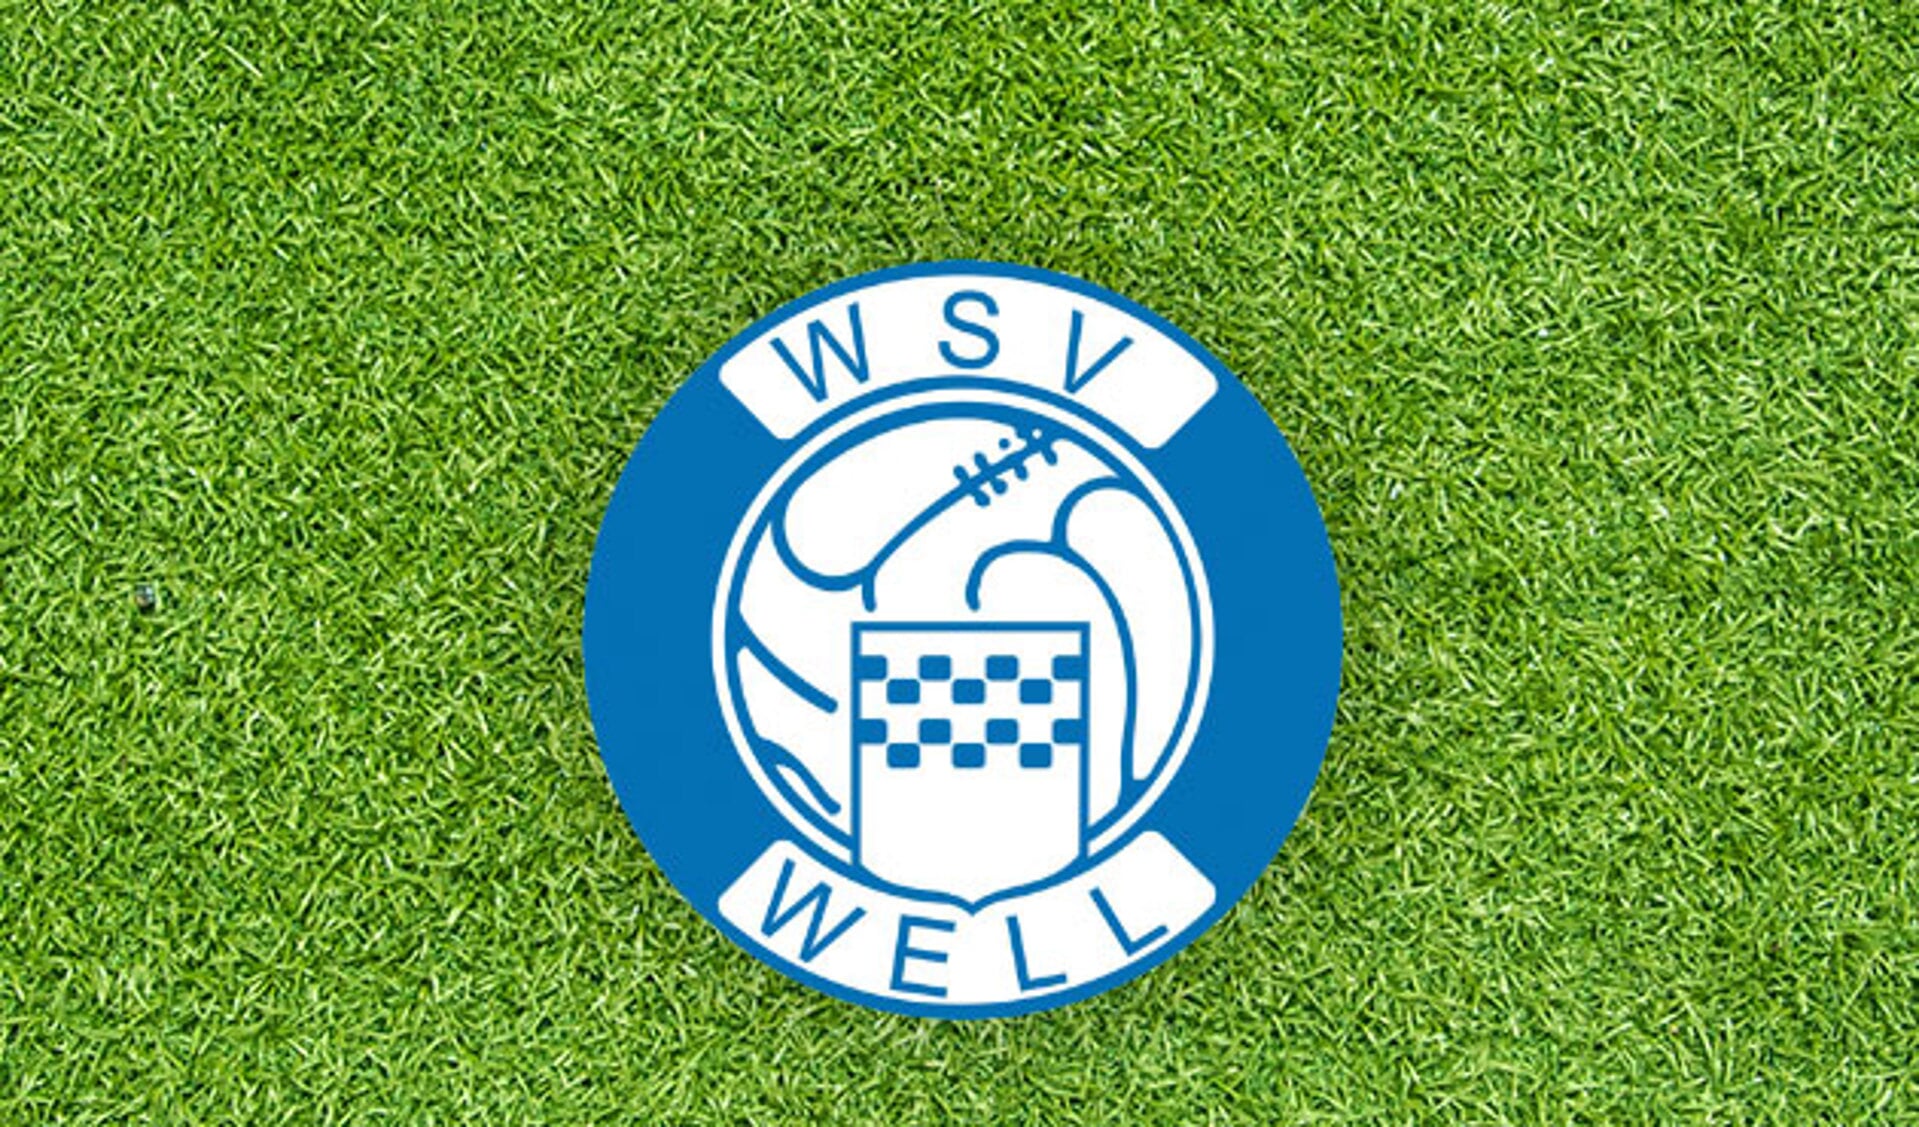 Vacature: W.S.V. Well zoekt een nieuwe hoofdtrainer